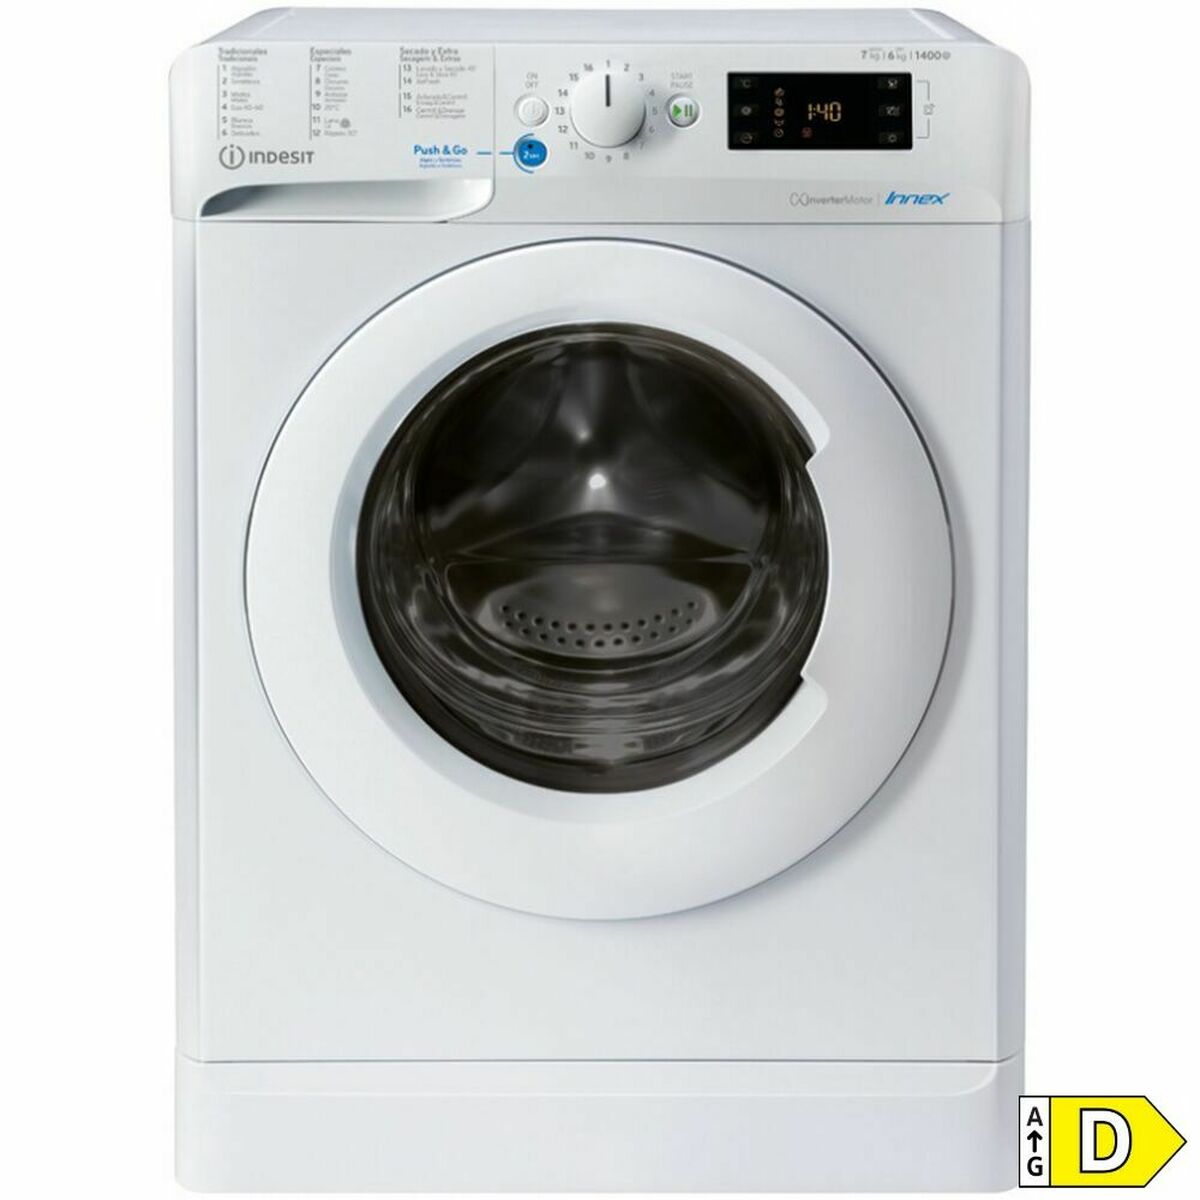 Washer - Dryer Indesit BDE761483XWSPTN 7kg / 5 kg White 1400 rpm